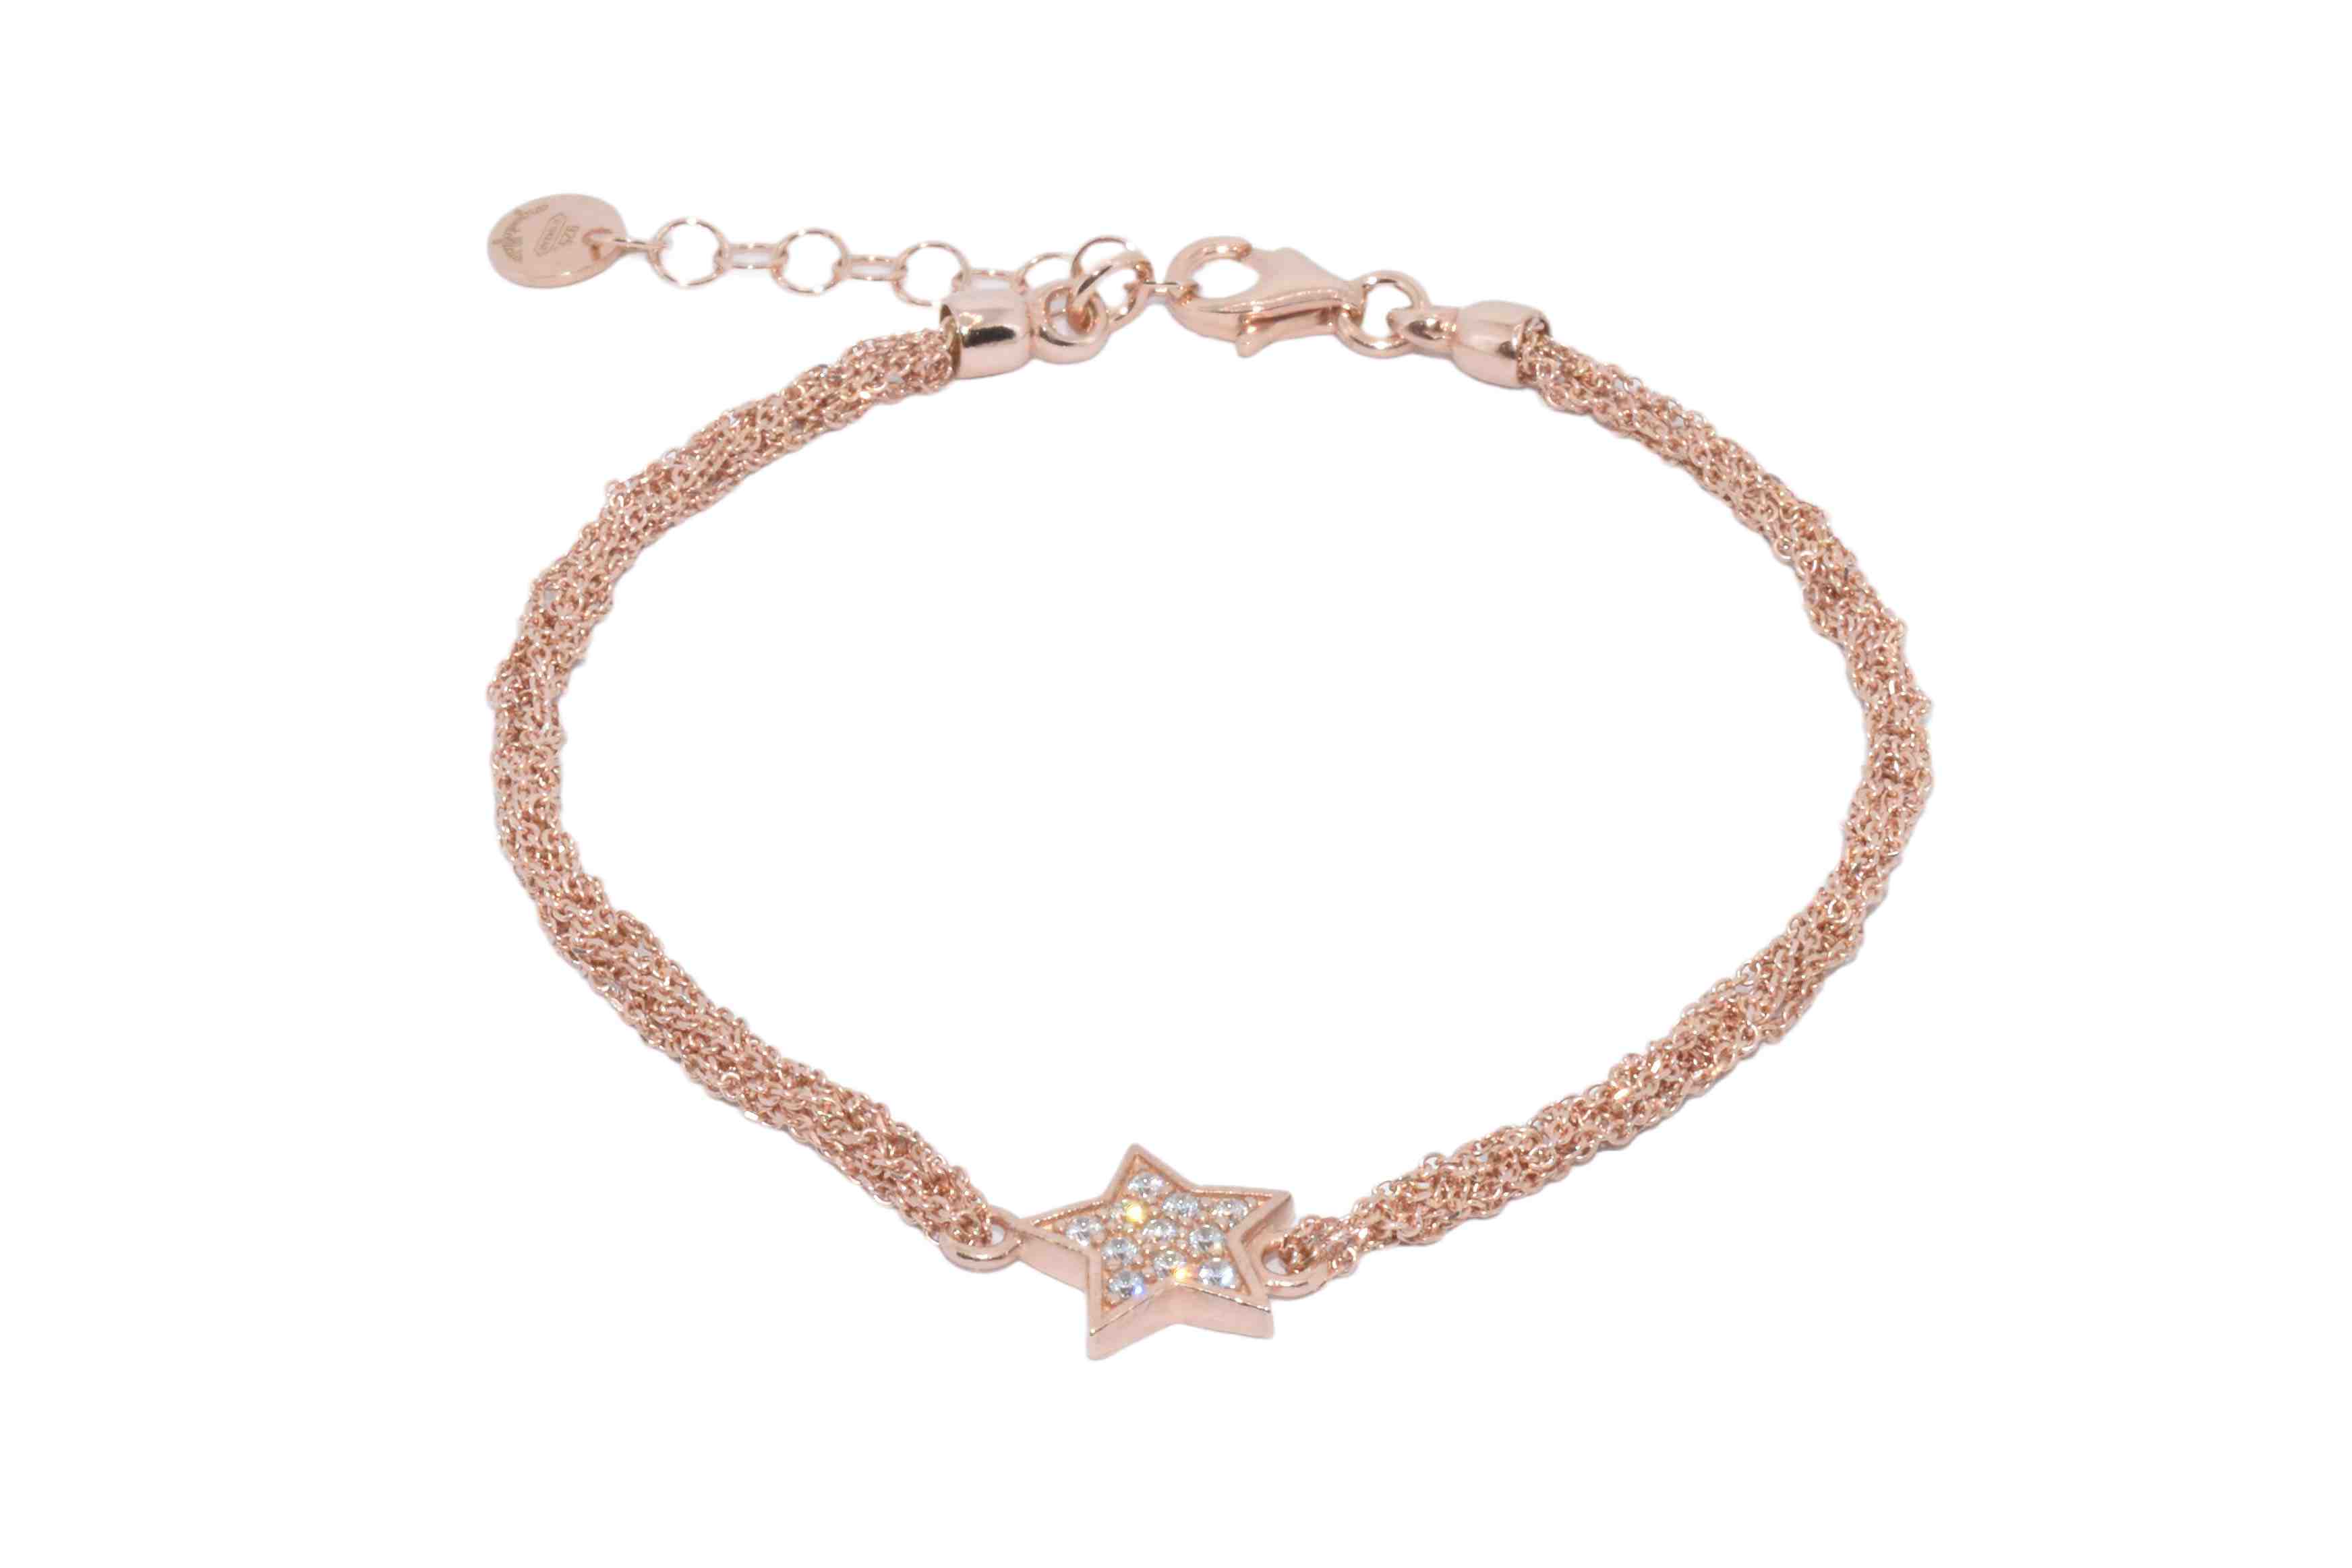 Bracciale-uncinetto-stella-con-zirconi-Argentofilato-in-argento-925-oro-rosa